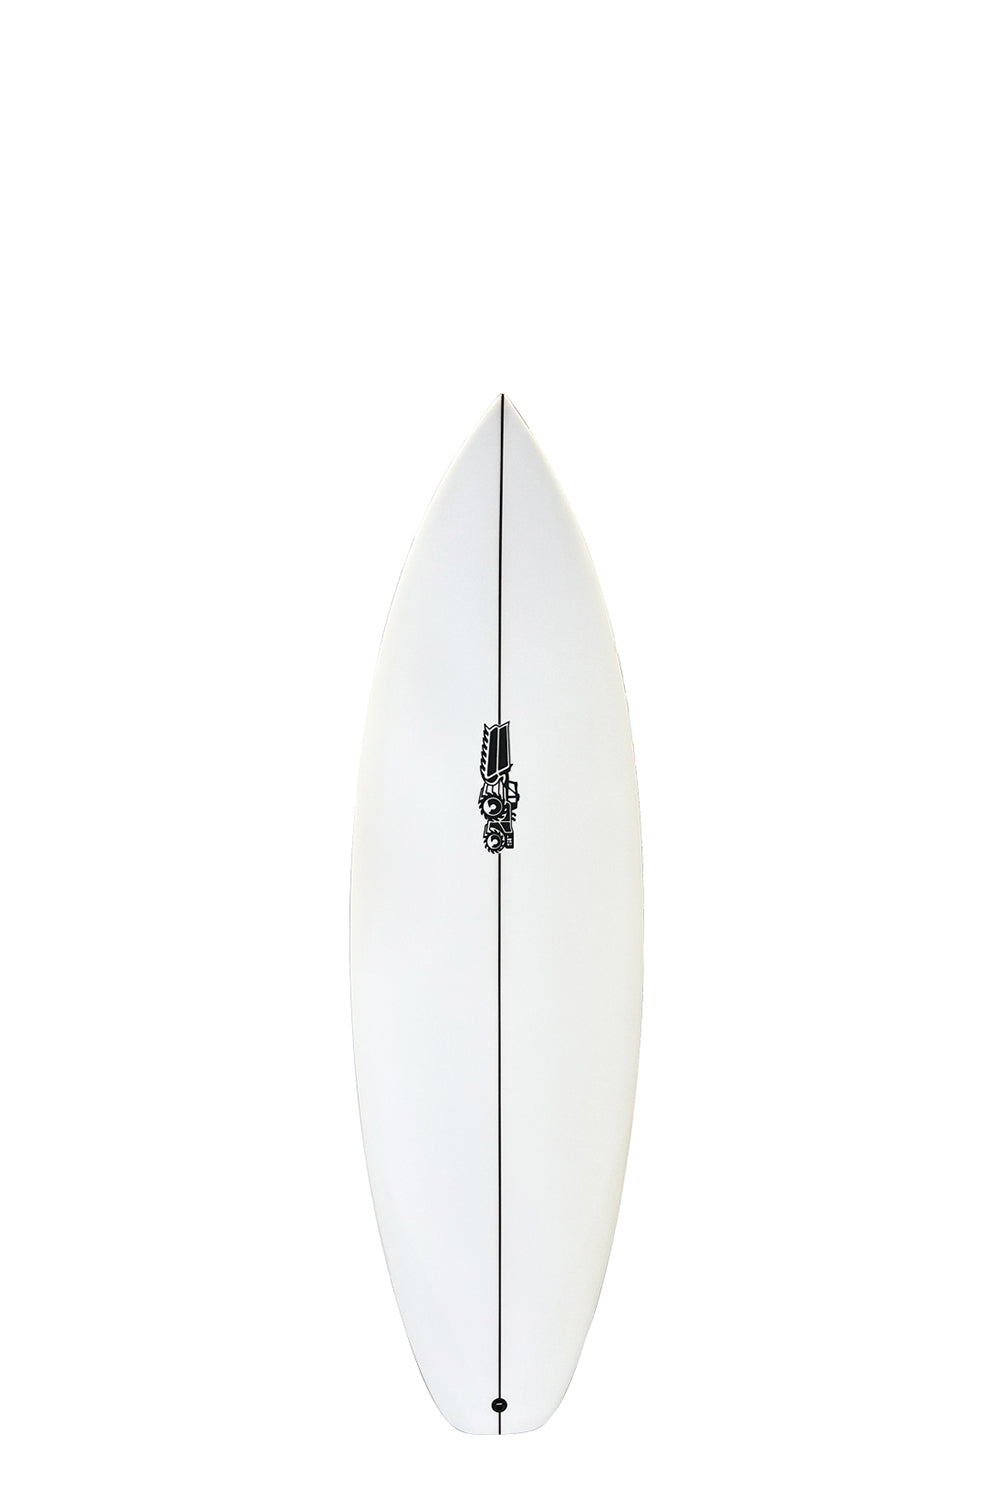 JS Industries Xero Youth PE Surfboard